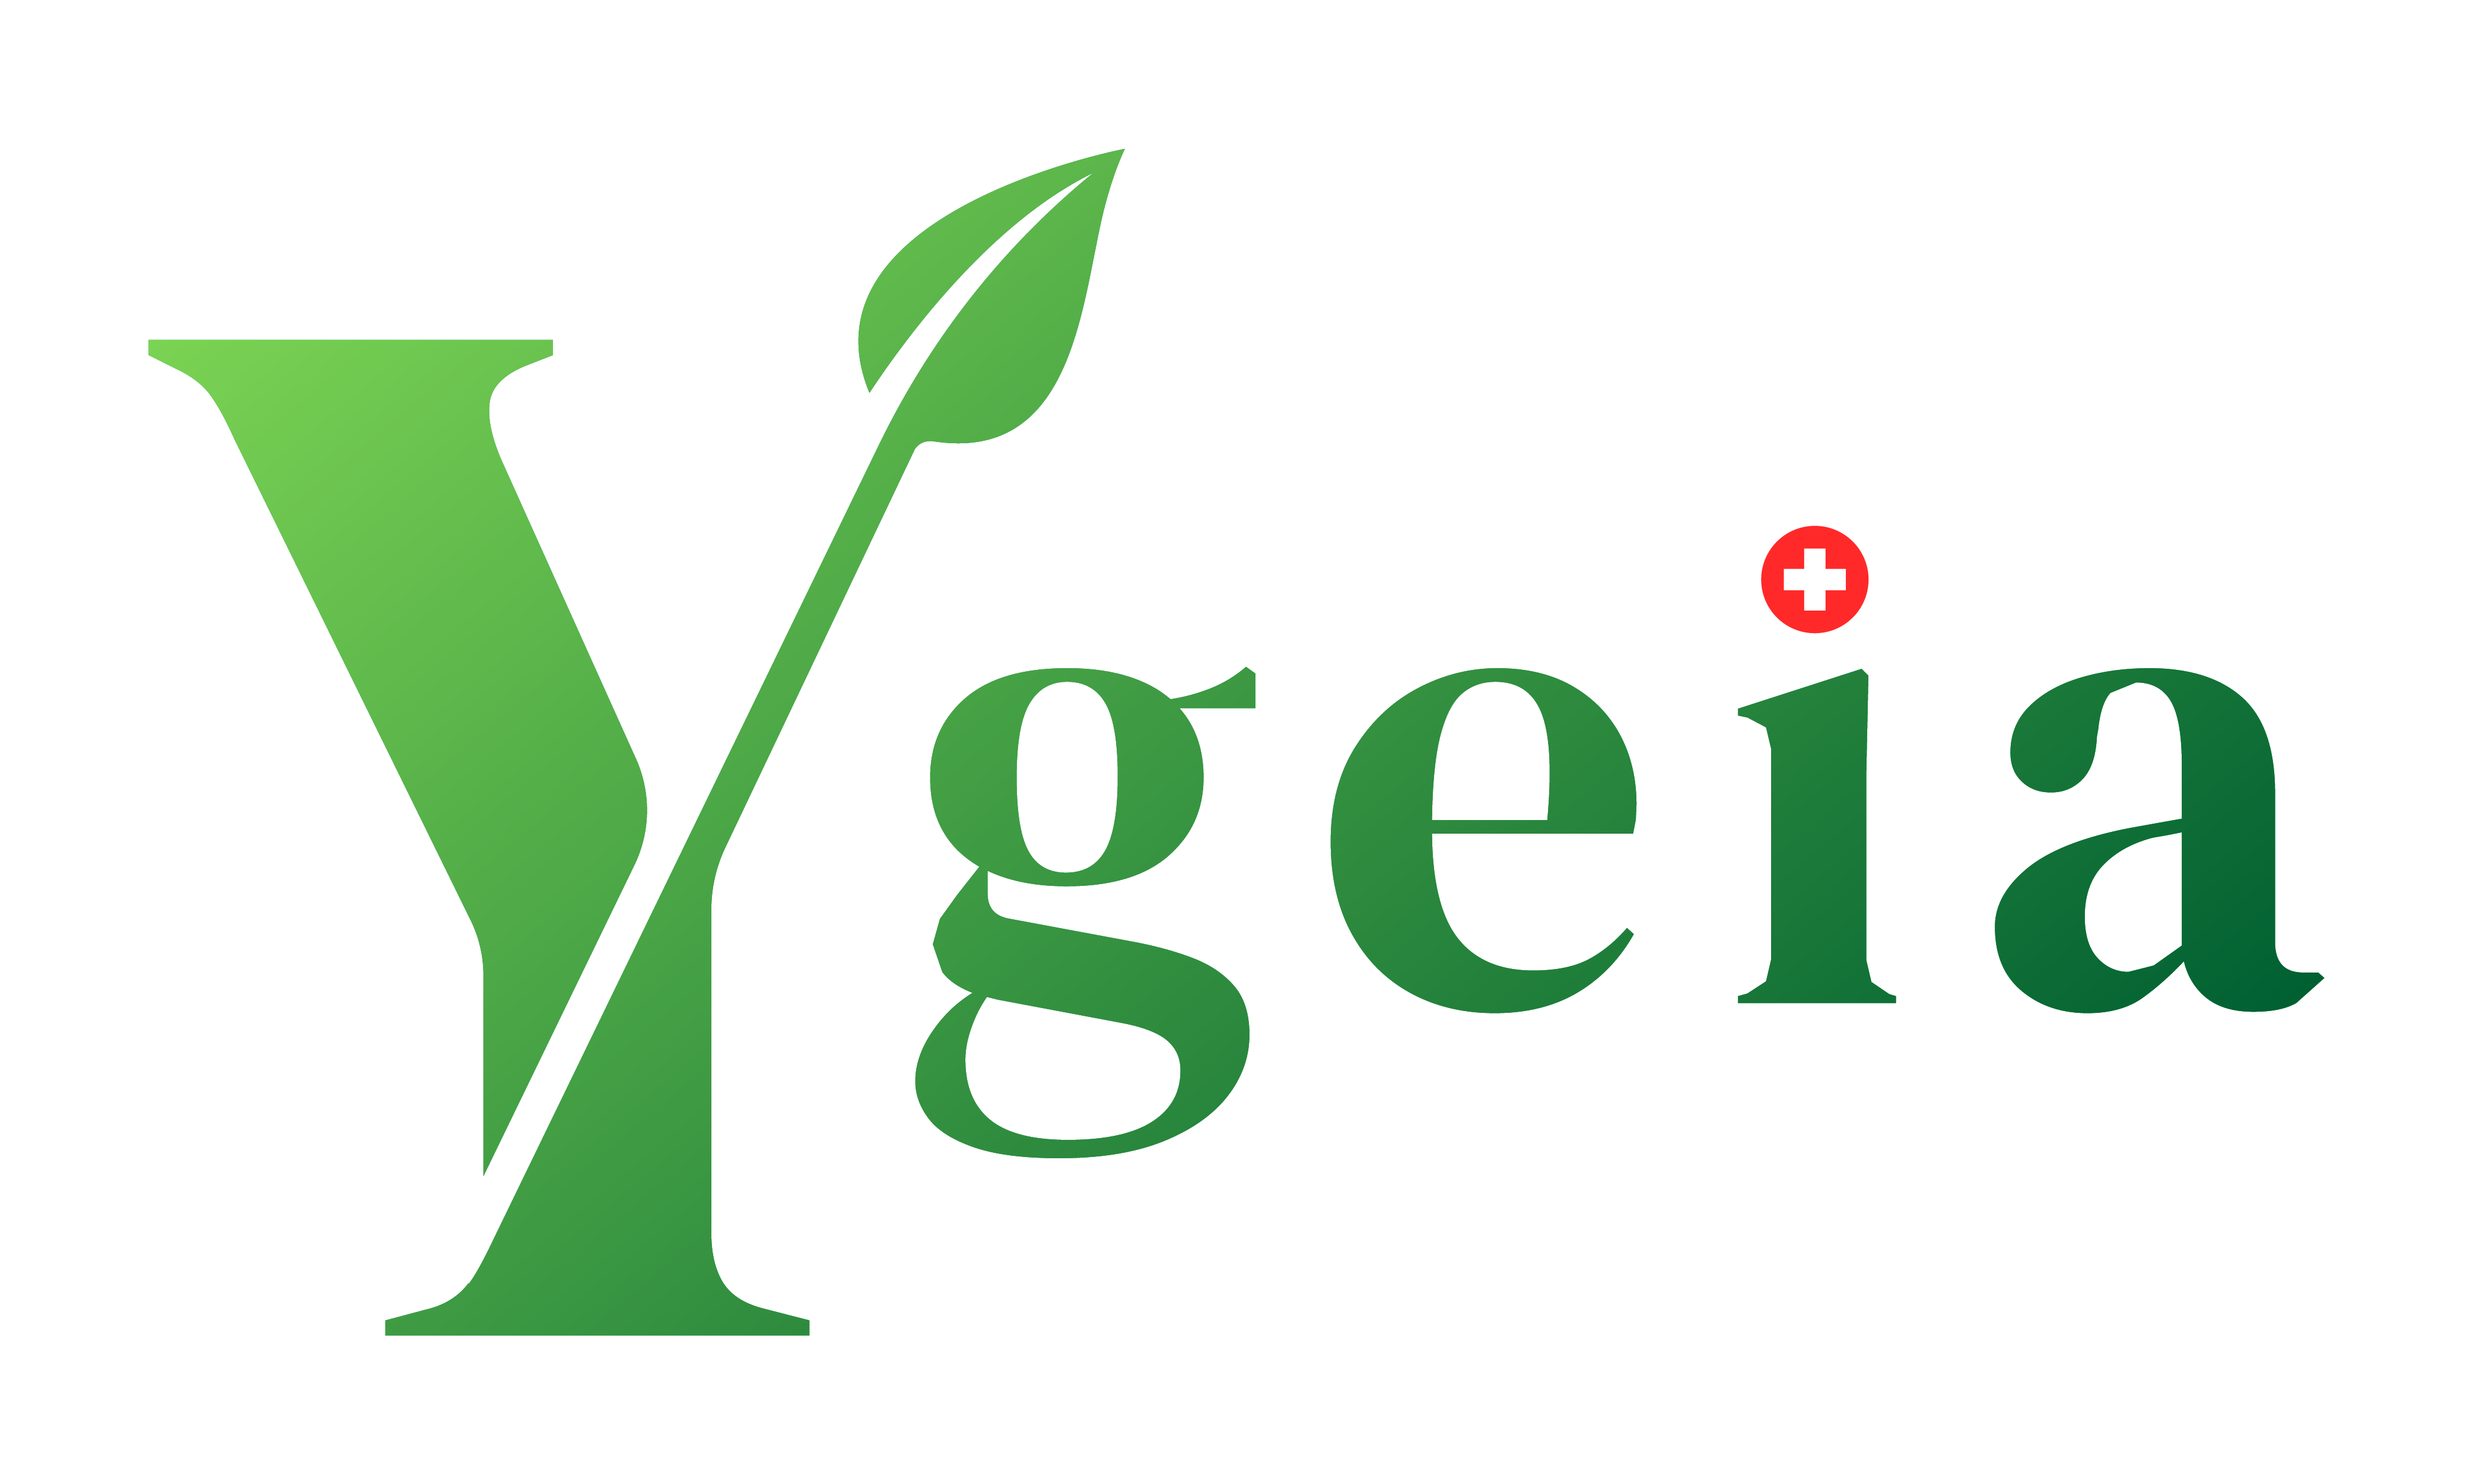 Logo Ygeia